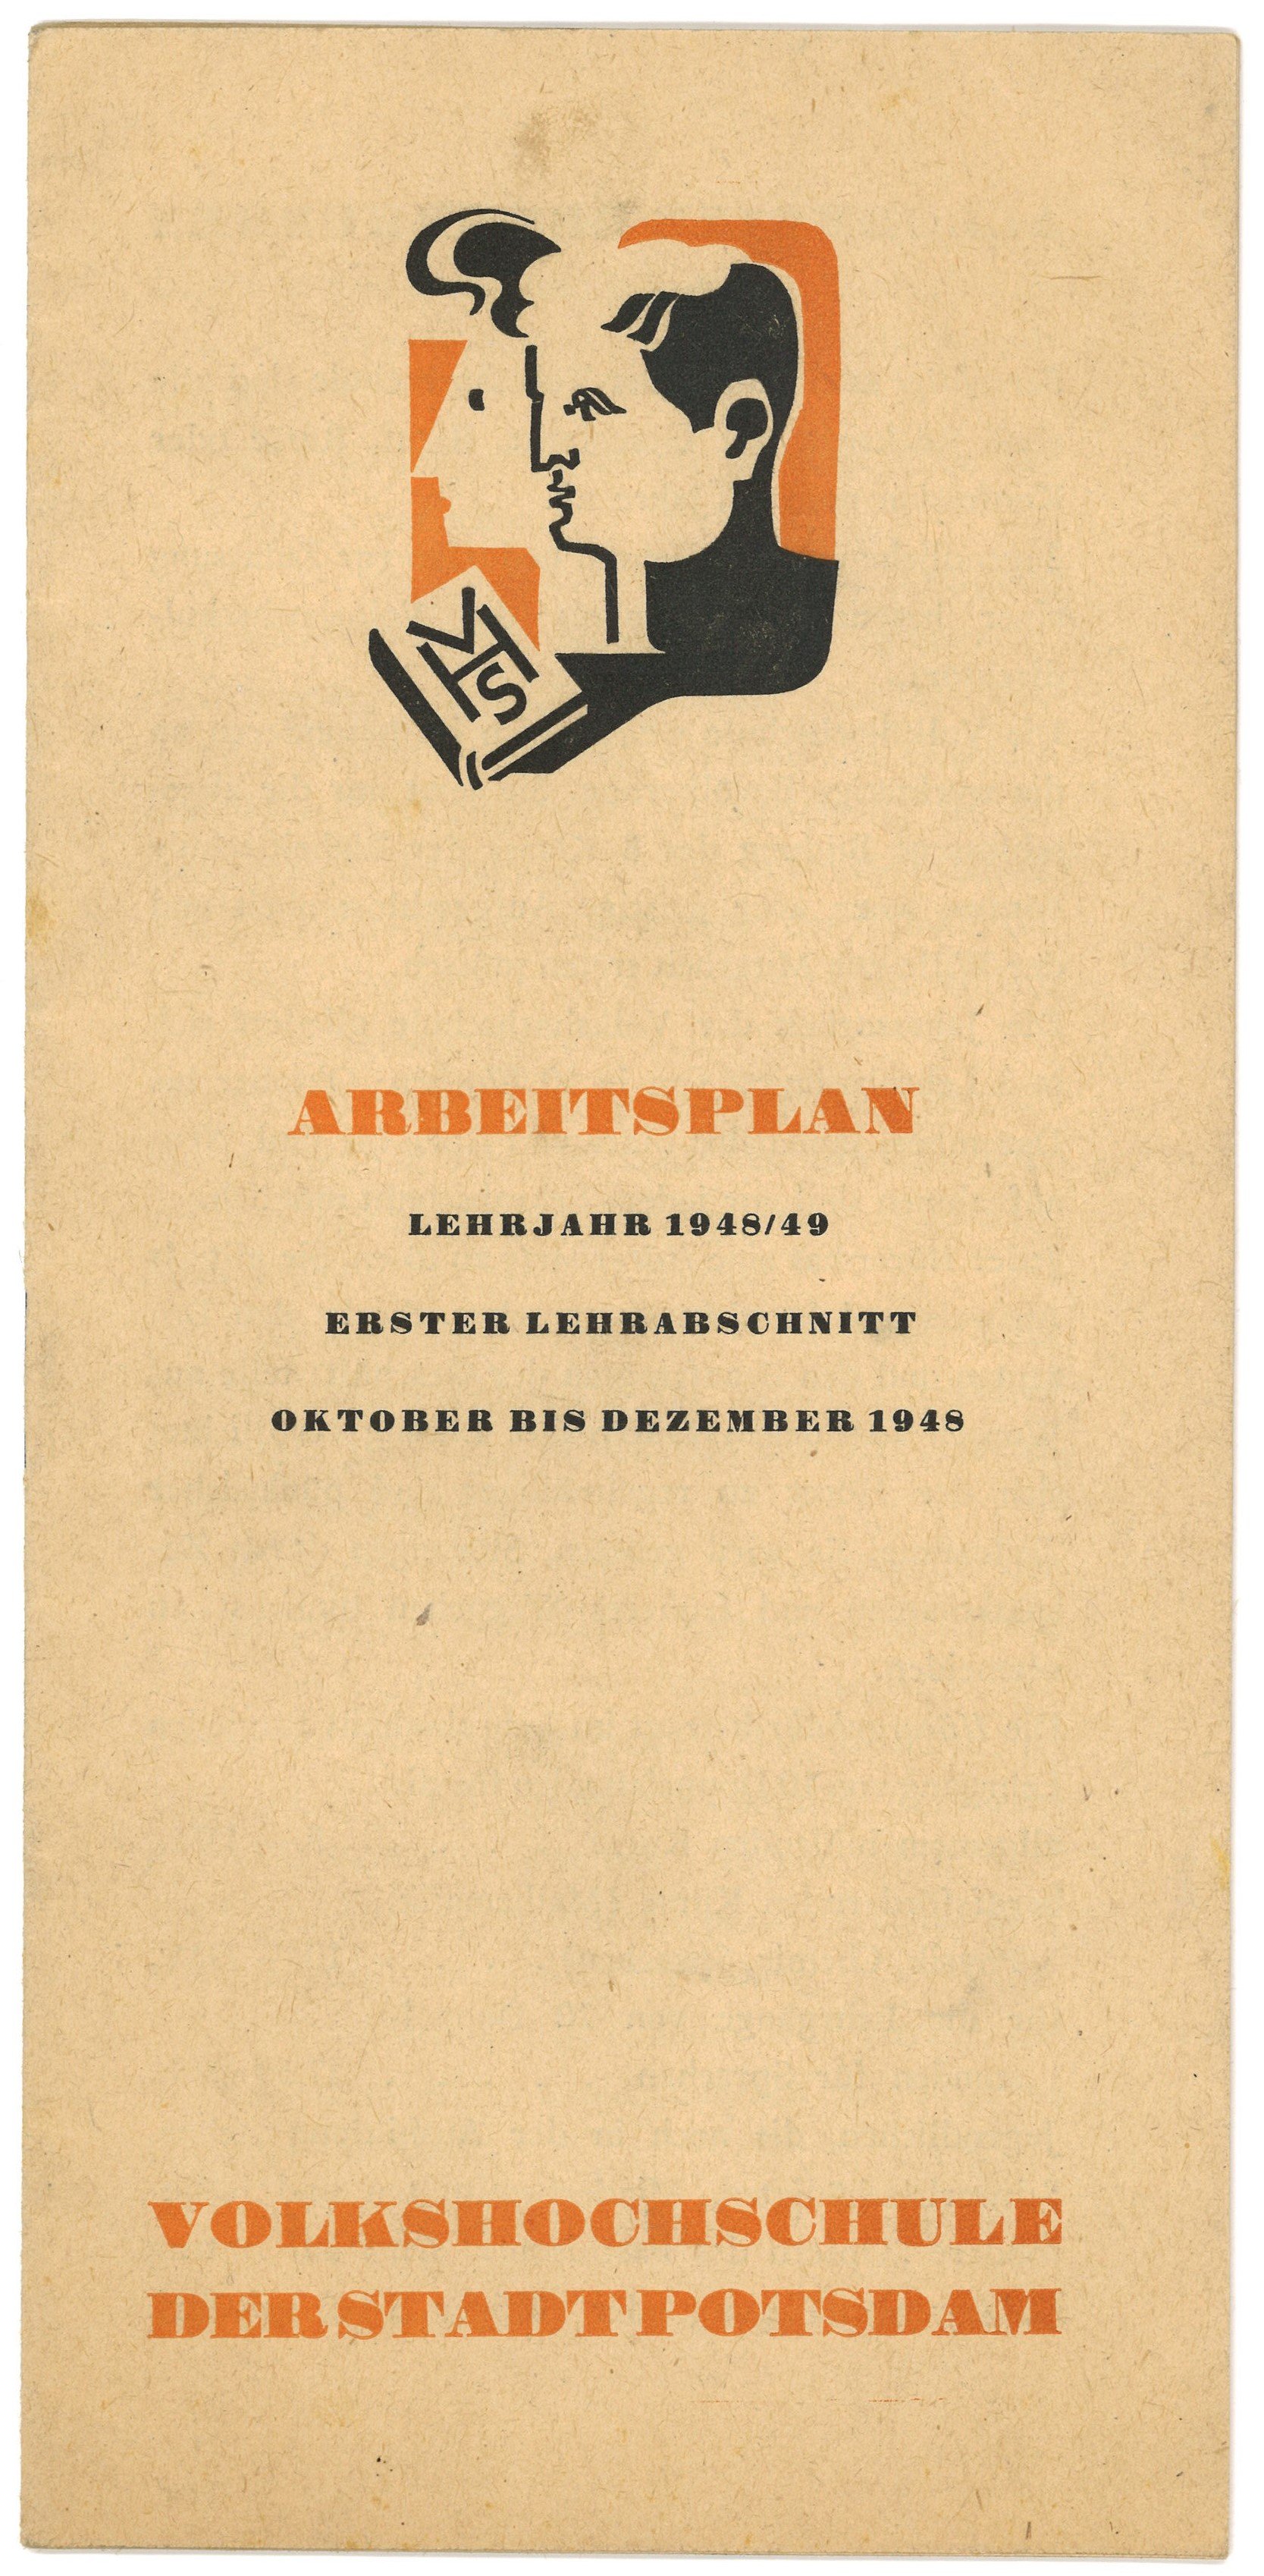 Arbeitsplan der Volkshochschule Potsdam 1947/49 (Landesgeschichtliche Vereinigung für die Mark Brandenburg e.V., Archiv CC BY)